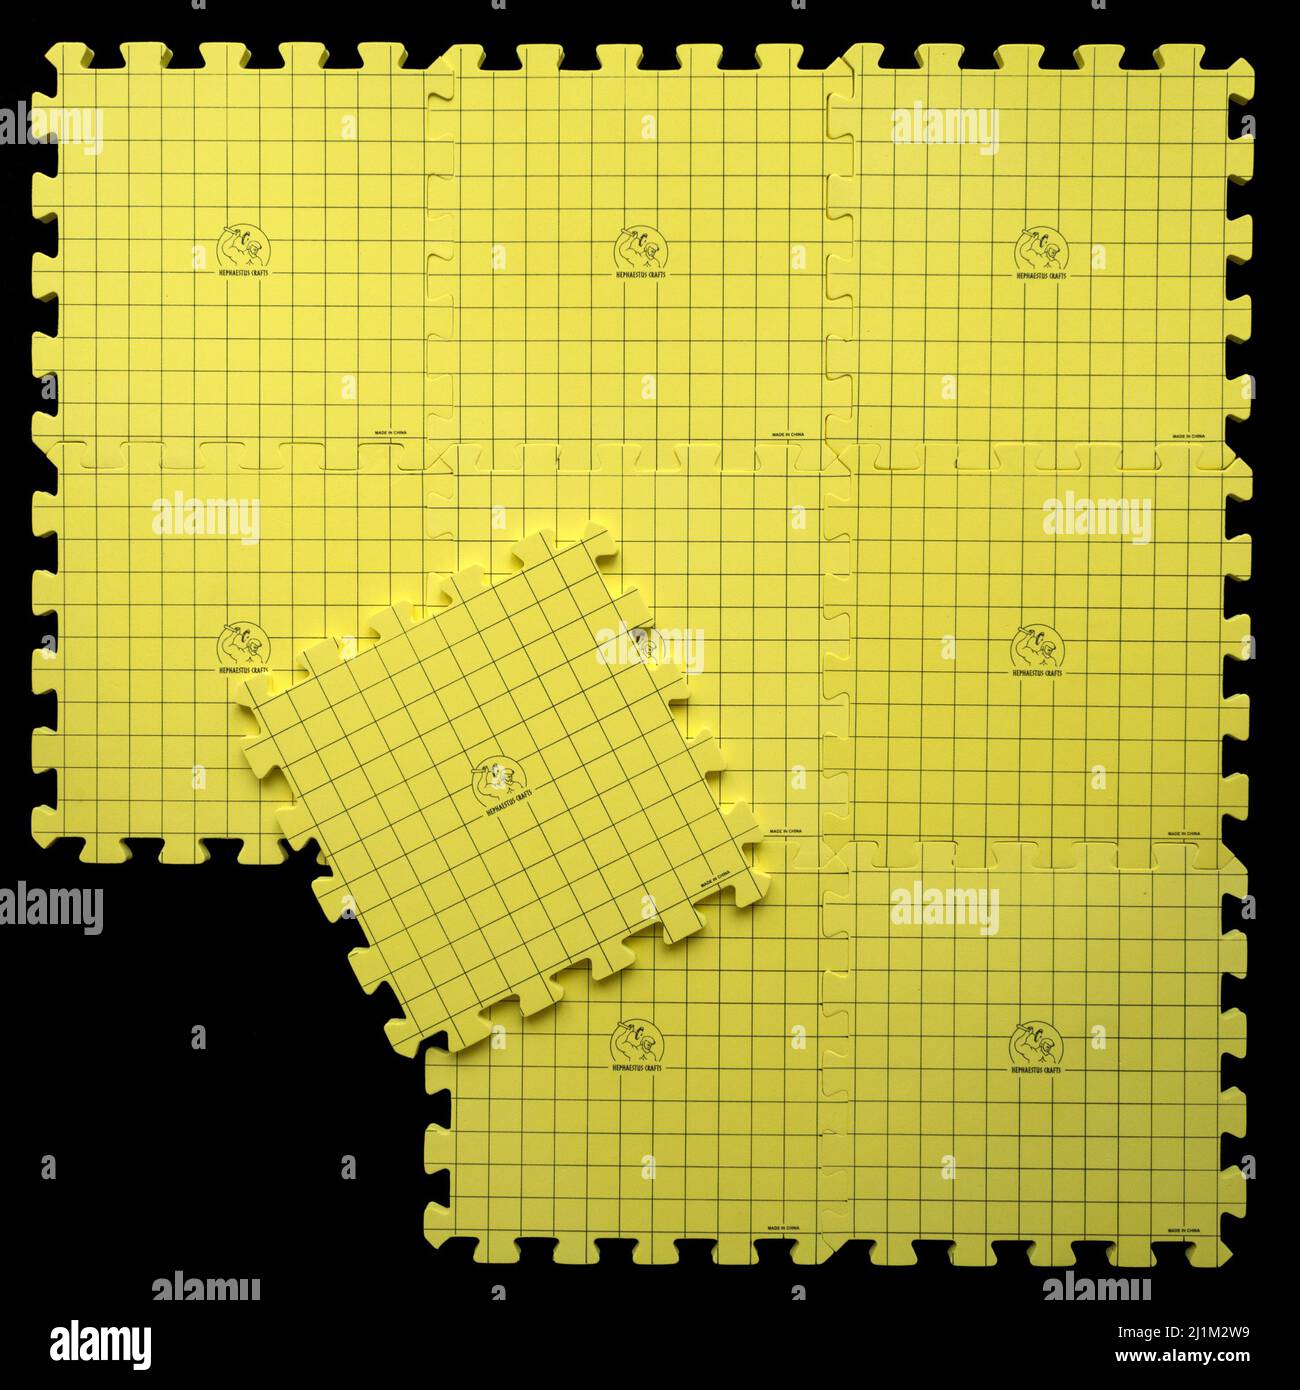 STOCK FOTO - Ein Satz von neun ineinandersetzenden gelben Schaum Hephaestus Craft Blockmatten zum Auslegen von Stricken verwendet. Stockfoto